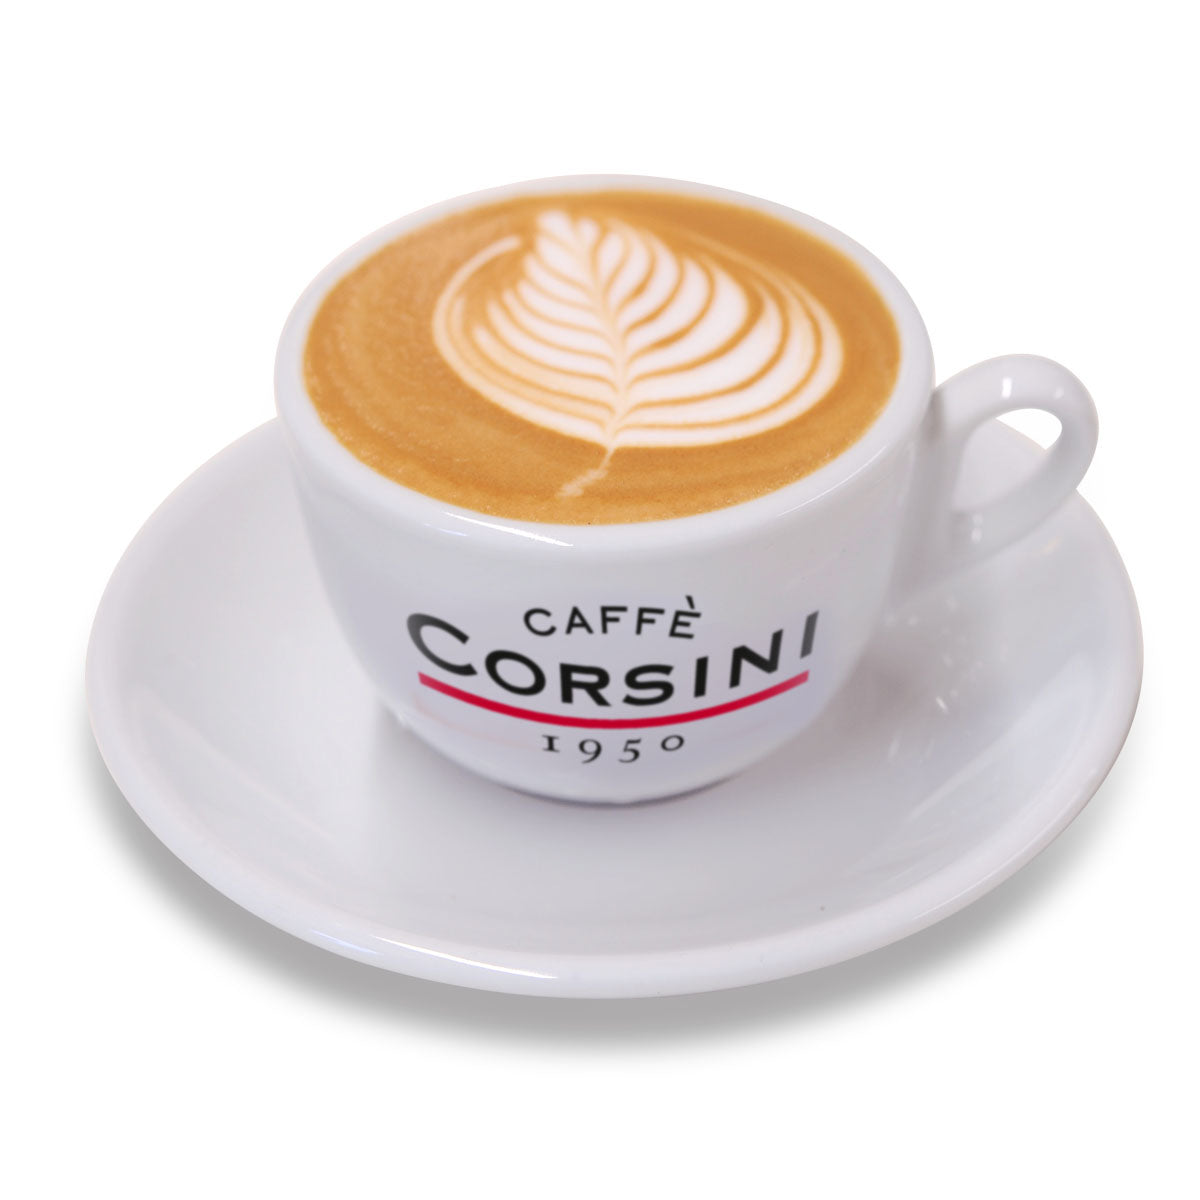 Tazza cappuccino Caffè Corsini in porcellana